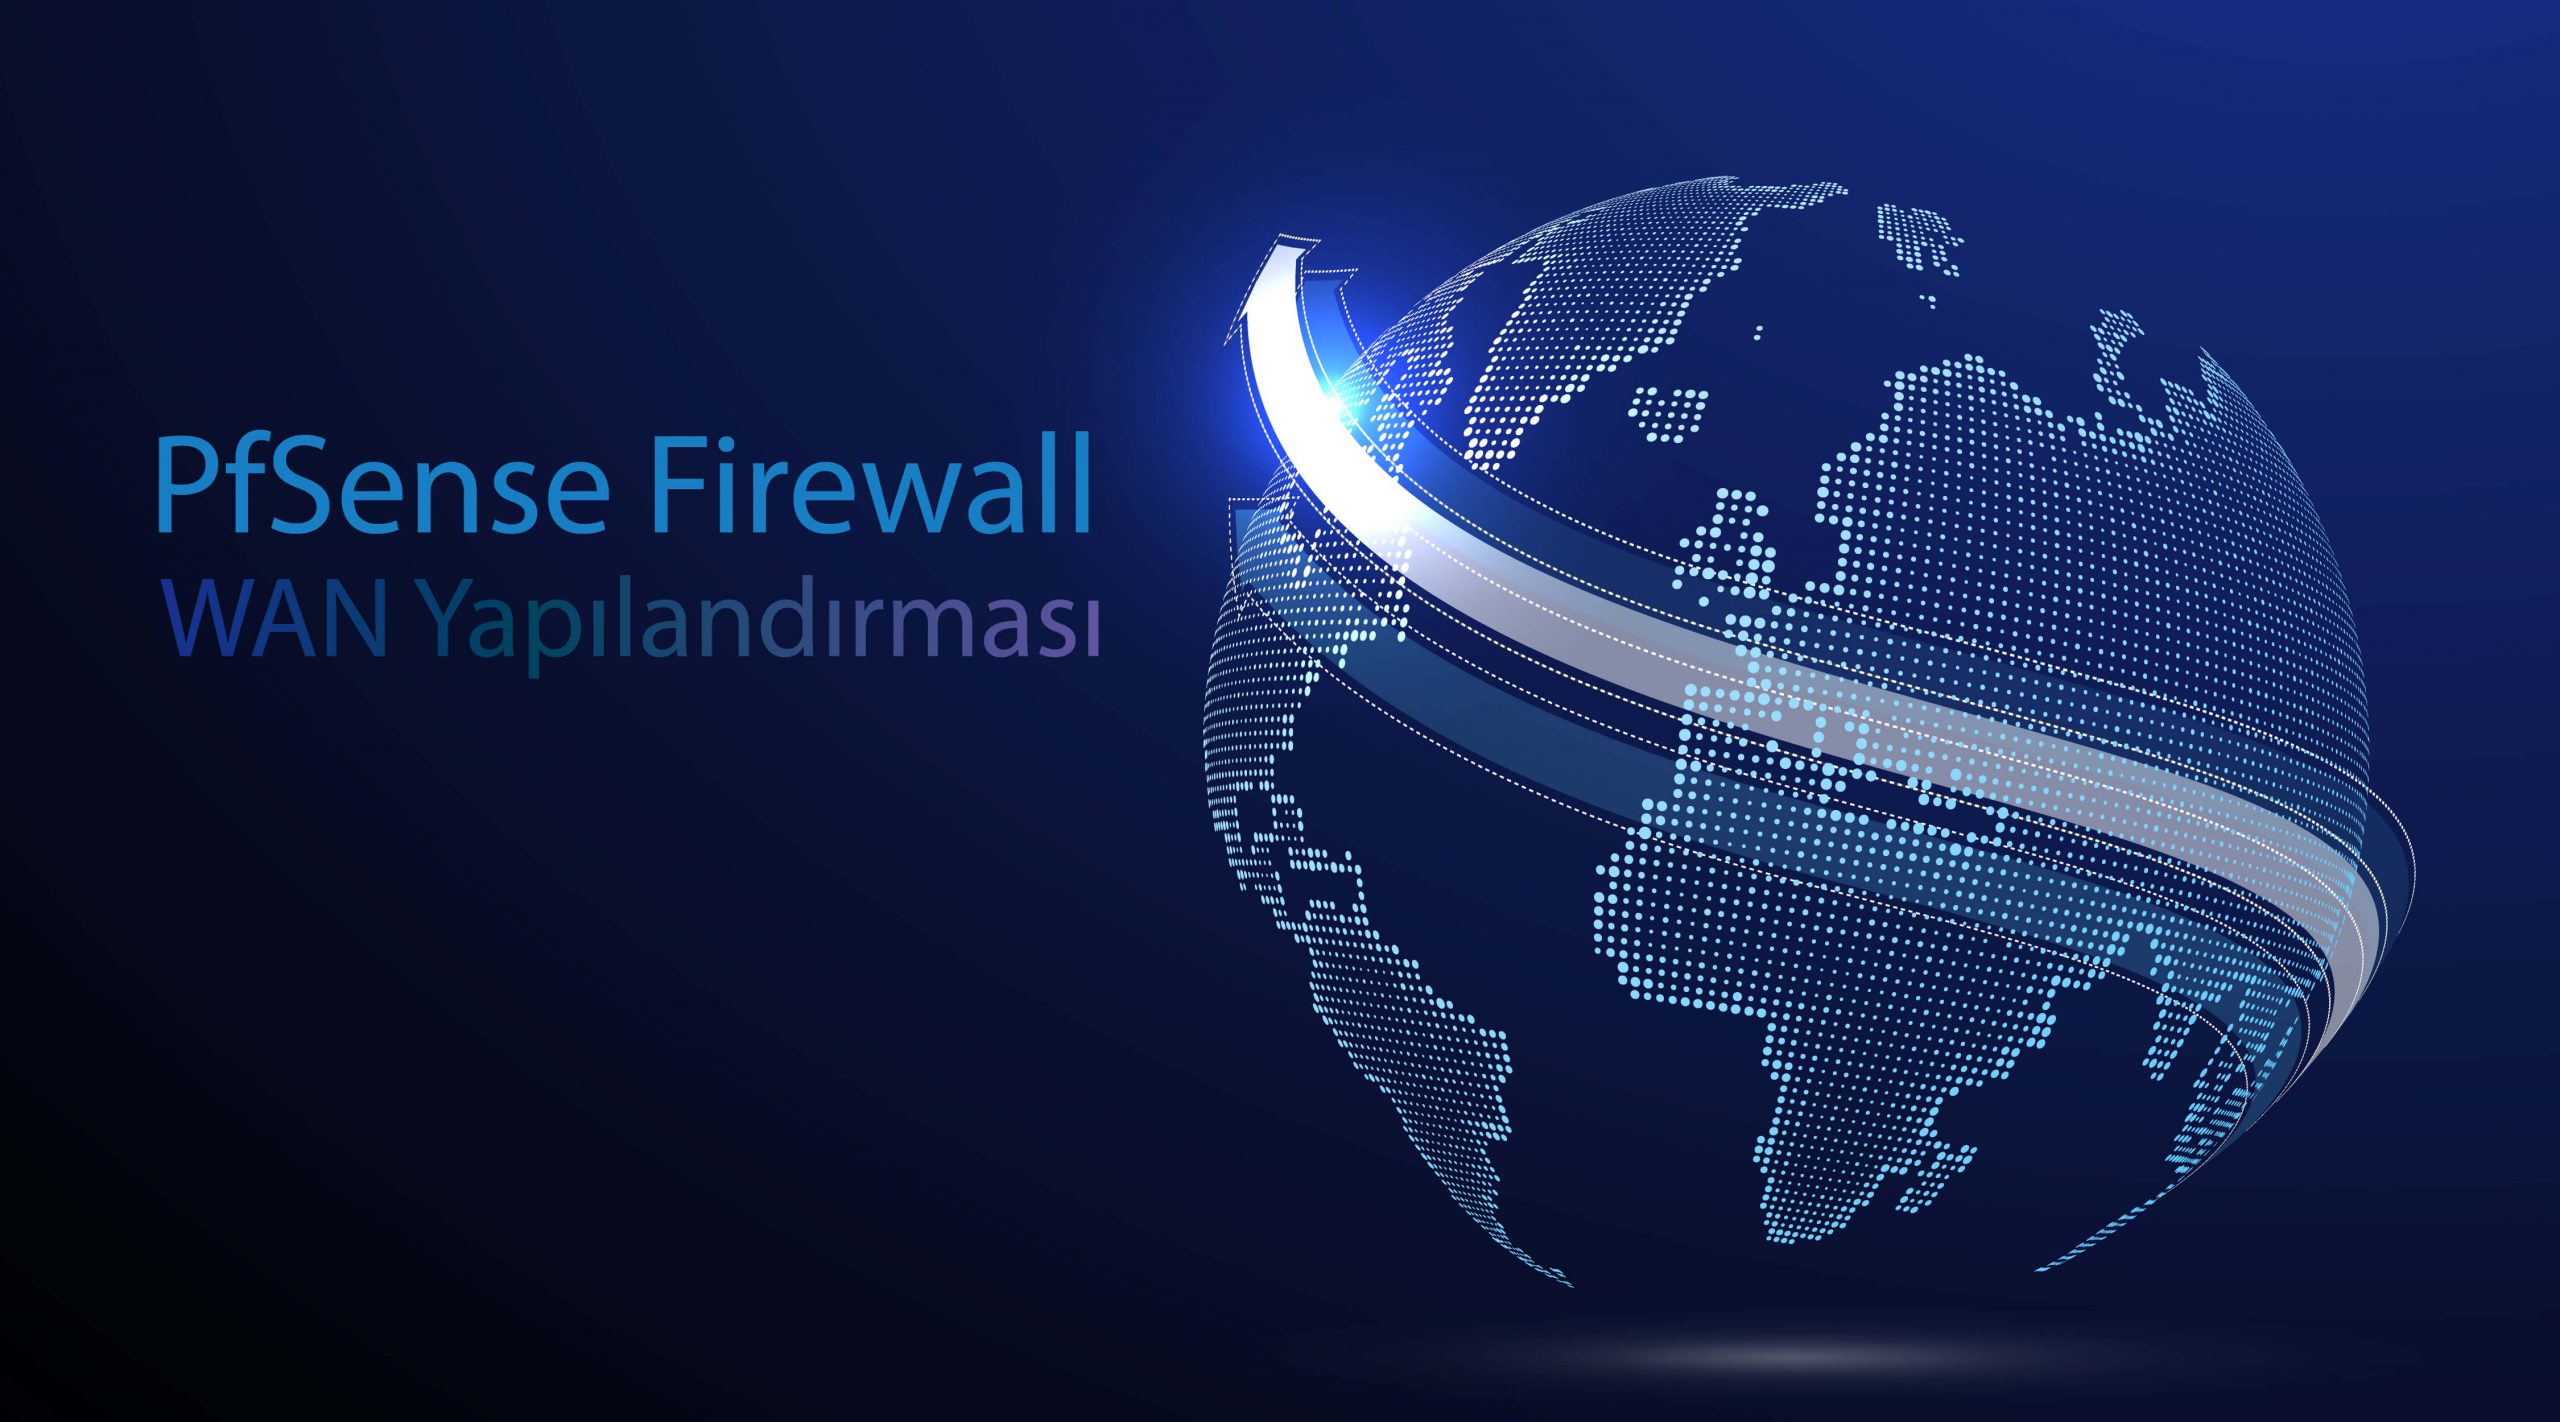 [TR] PfSense Firewall WAN Yapılandırması